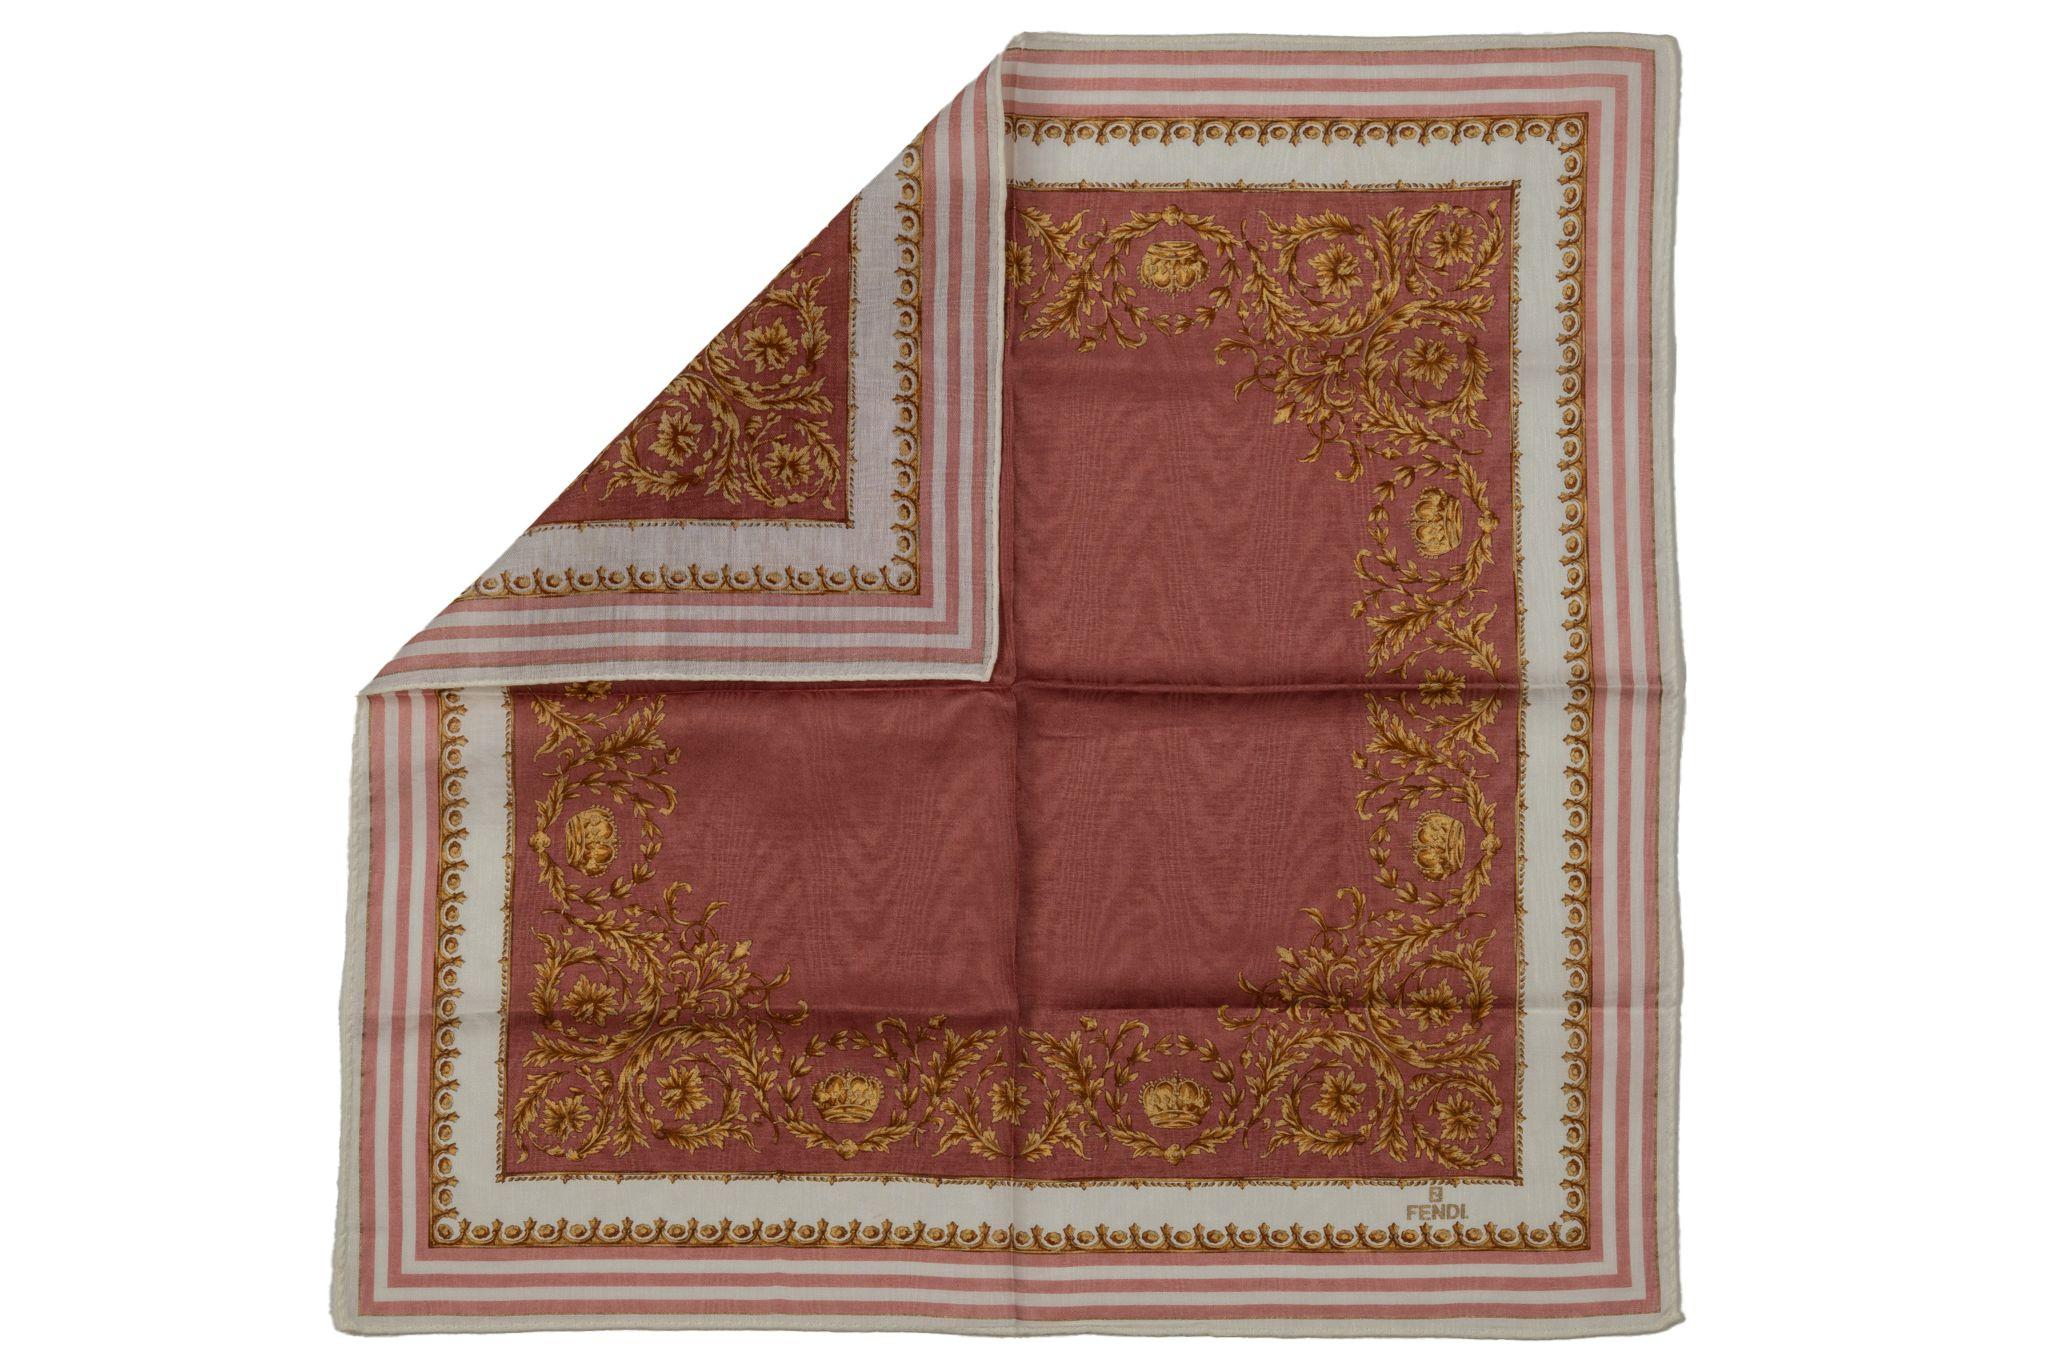 Fendi new cotton gavroche, weißes und rosafarbenes Design mit goldenem Barockmuster. 
Kein Label.